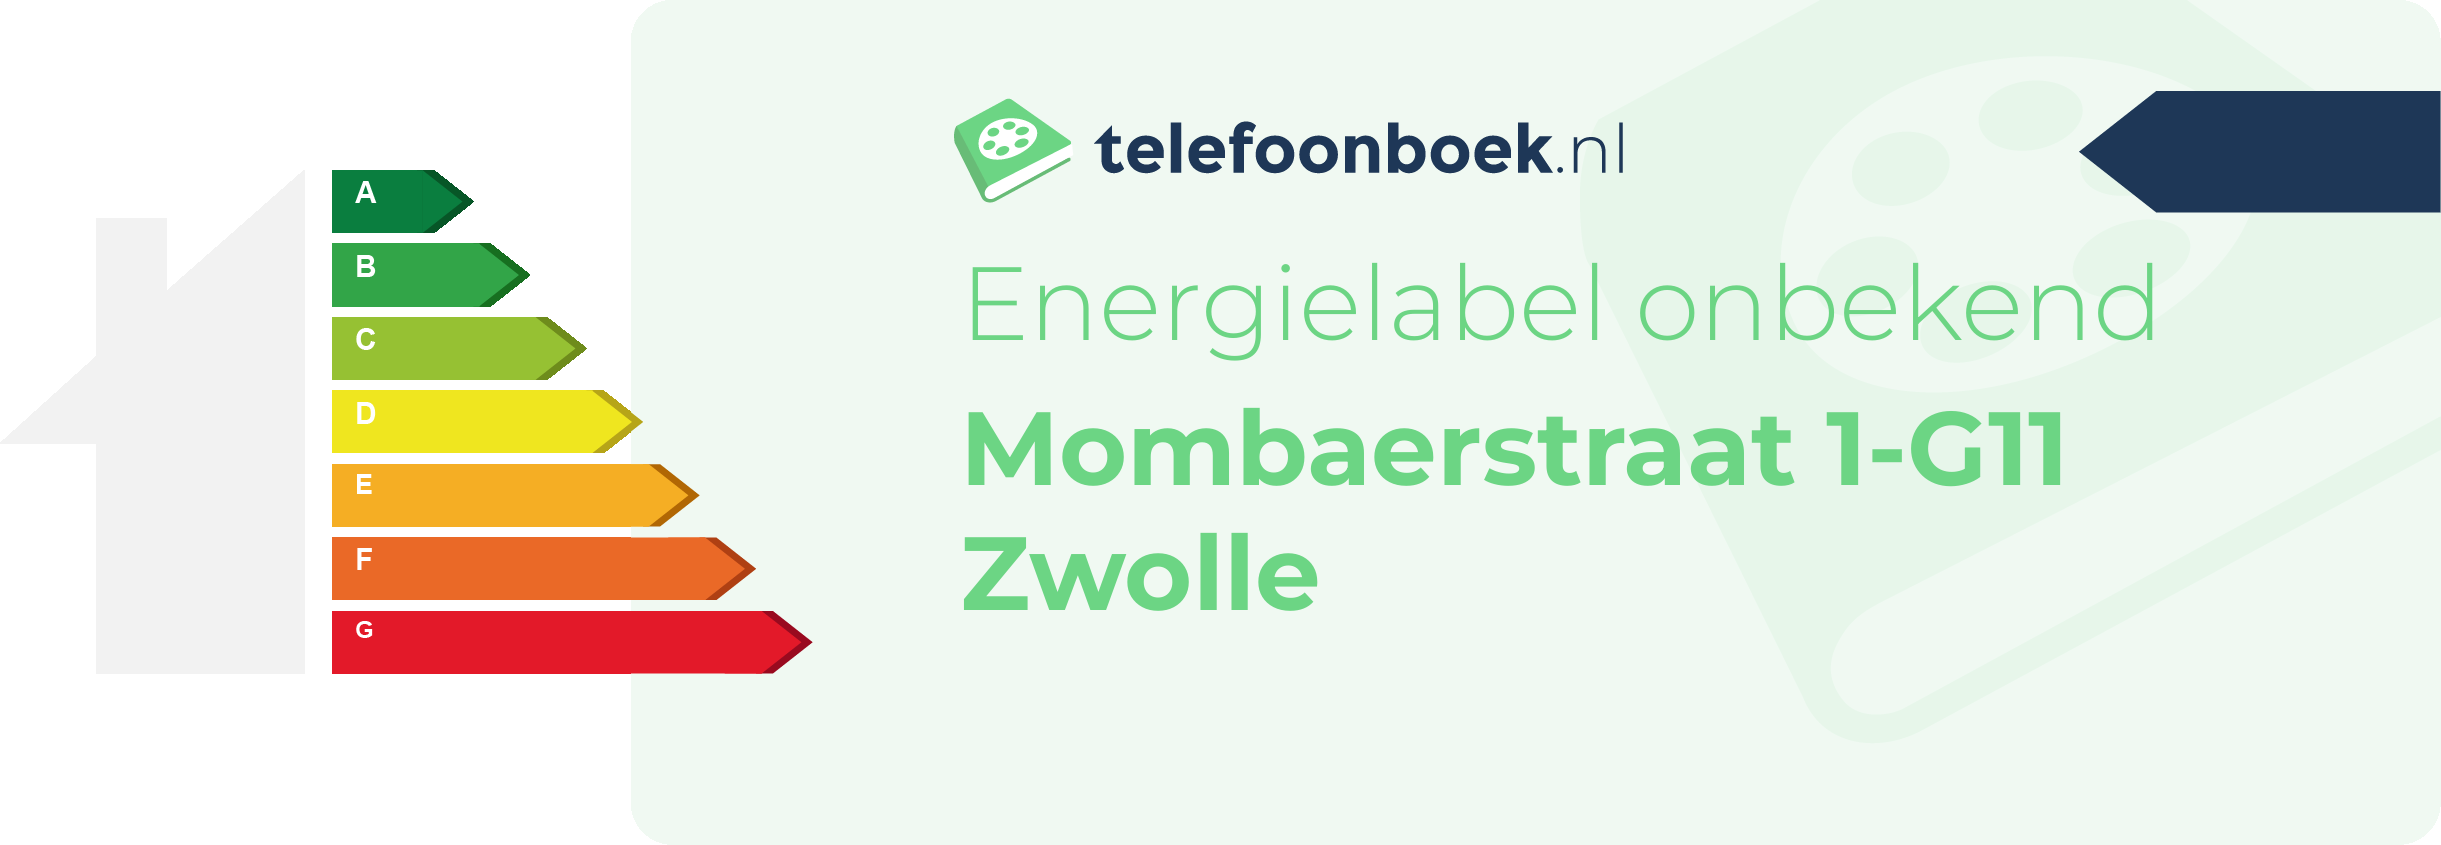 Energielabel Mombaerstraat 1-G11 Zwolle